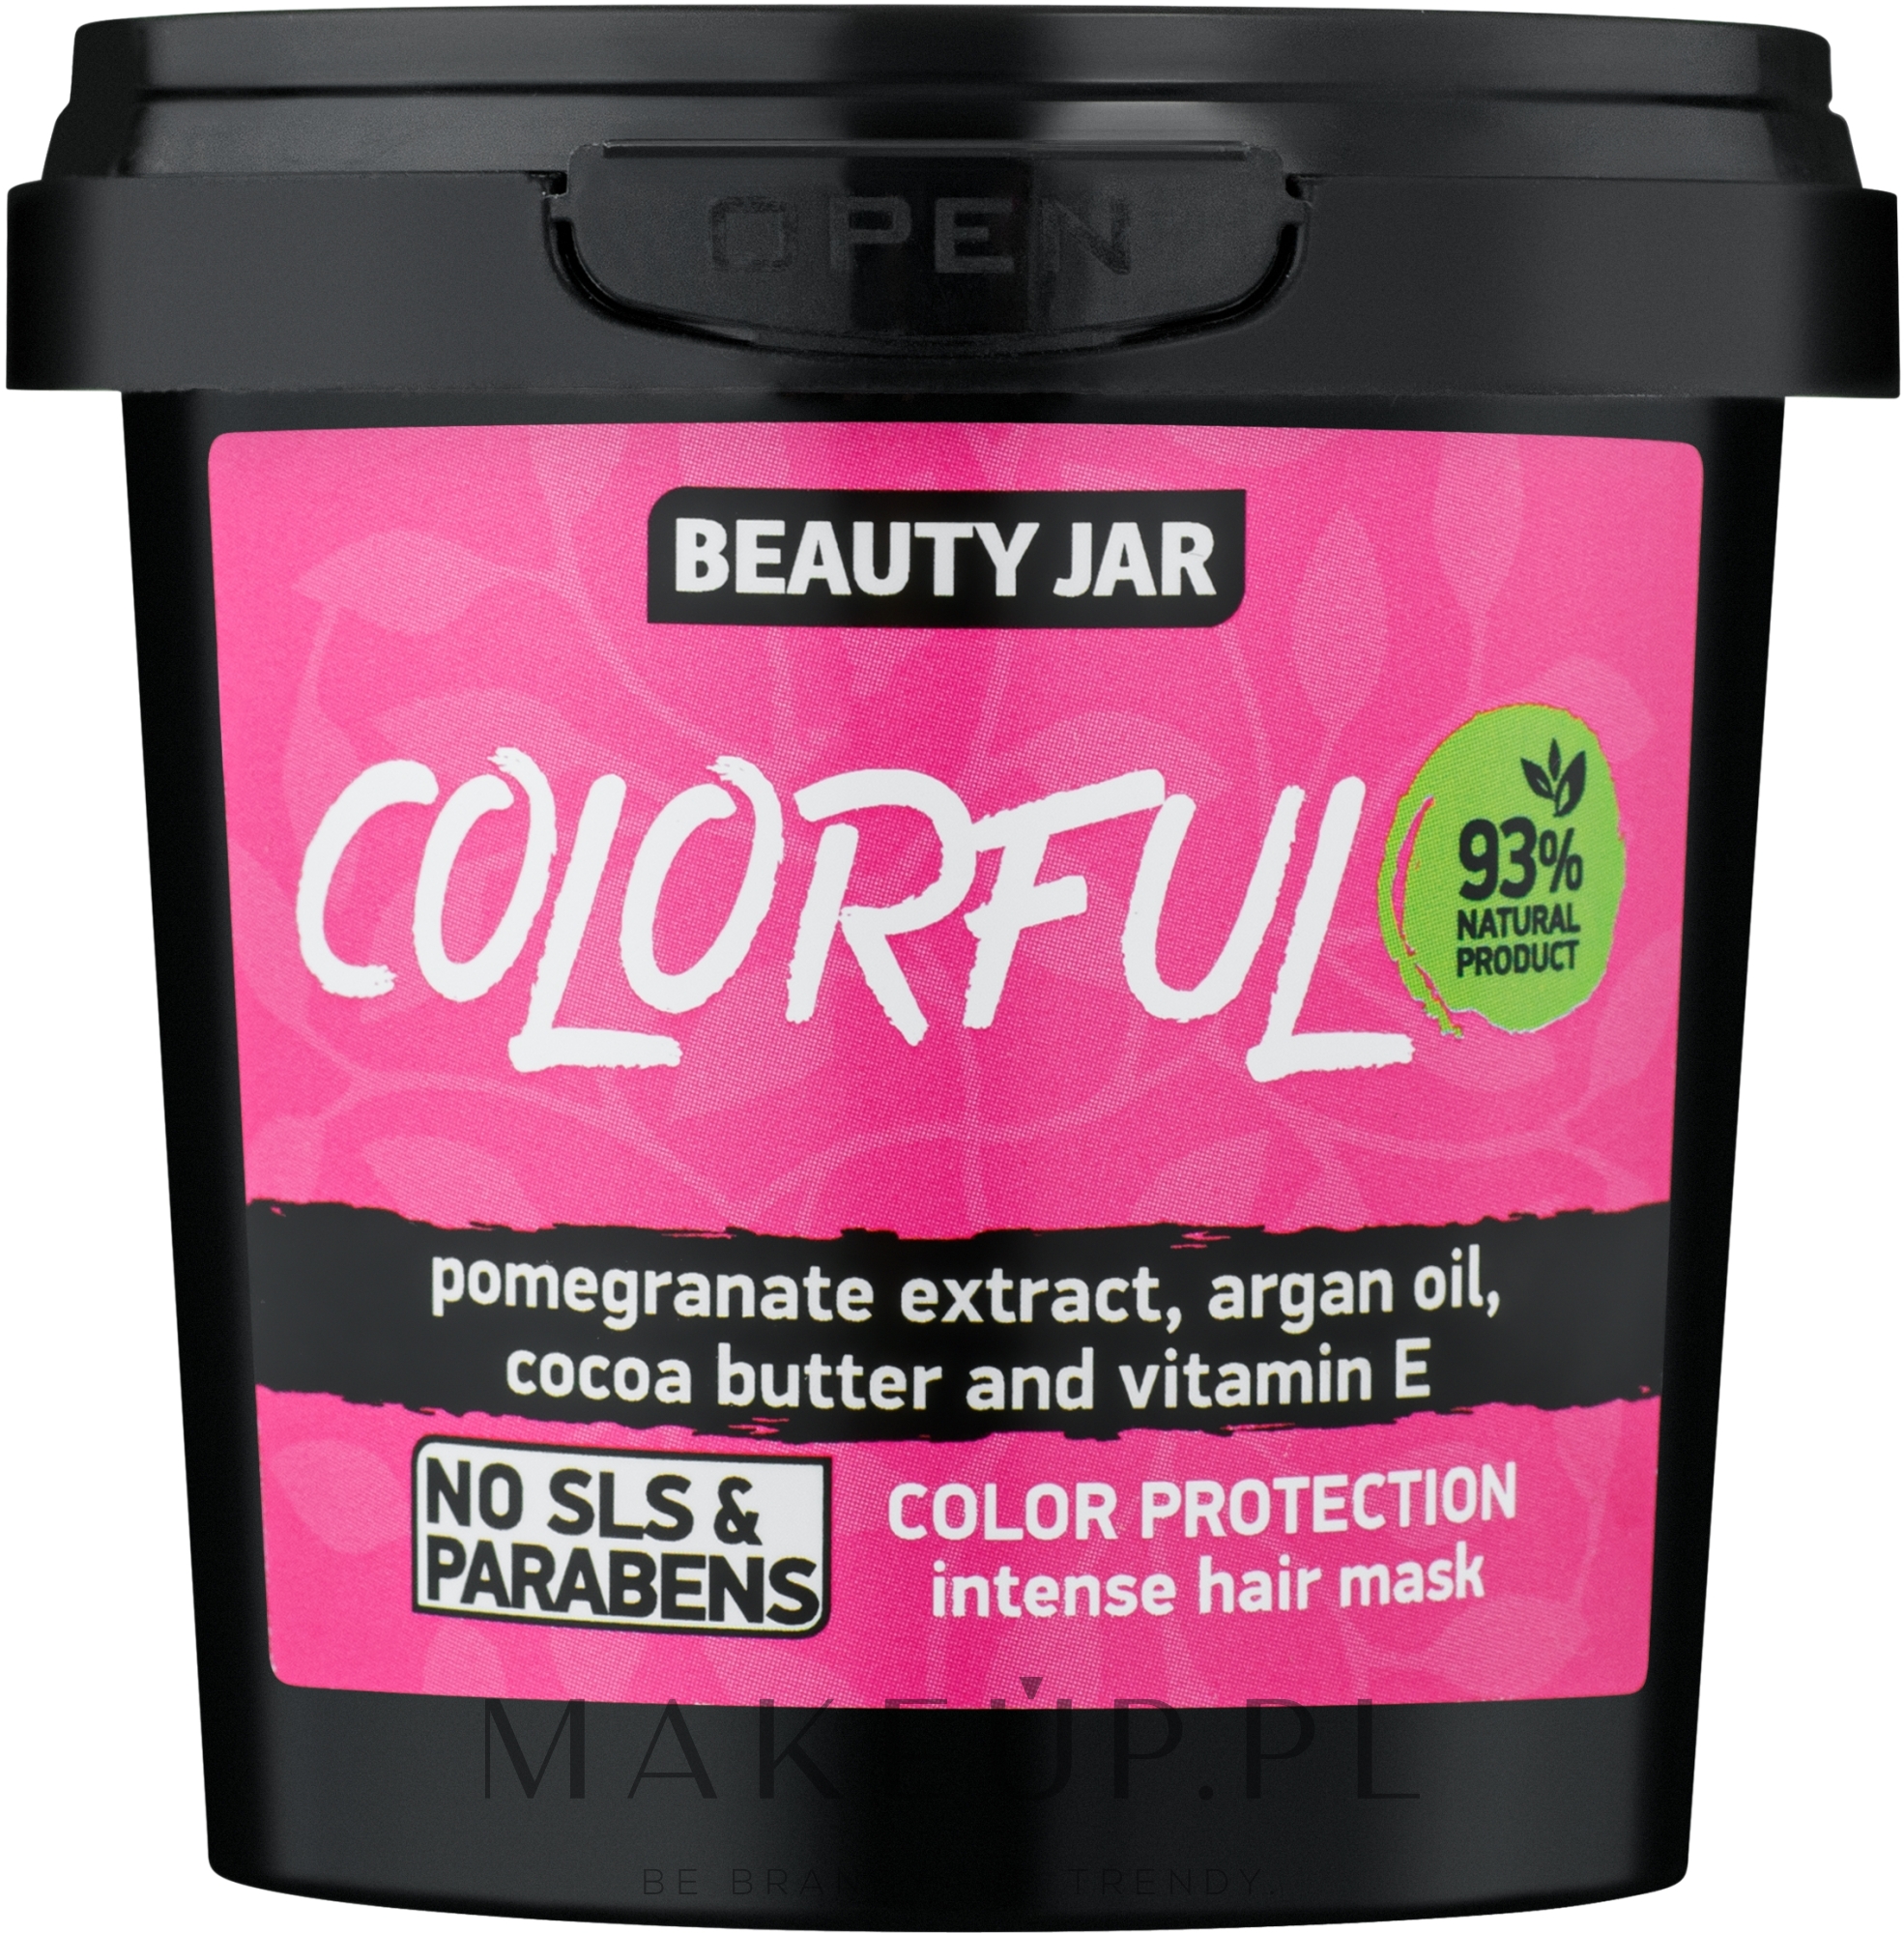 Intensywna maska chroniąca kolor włosów farbowanych - Beauty Jar Colorful Color Protection Intense Hair Mask — Zdjęcie 140 g